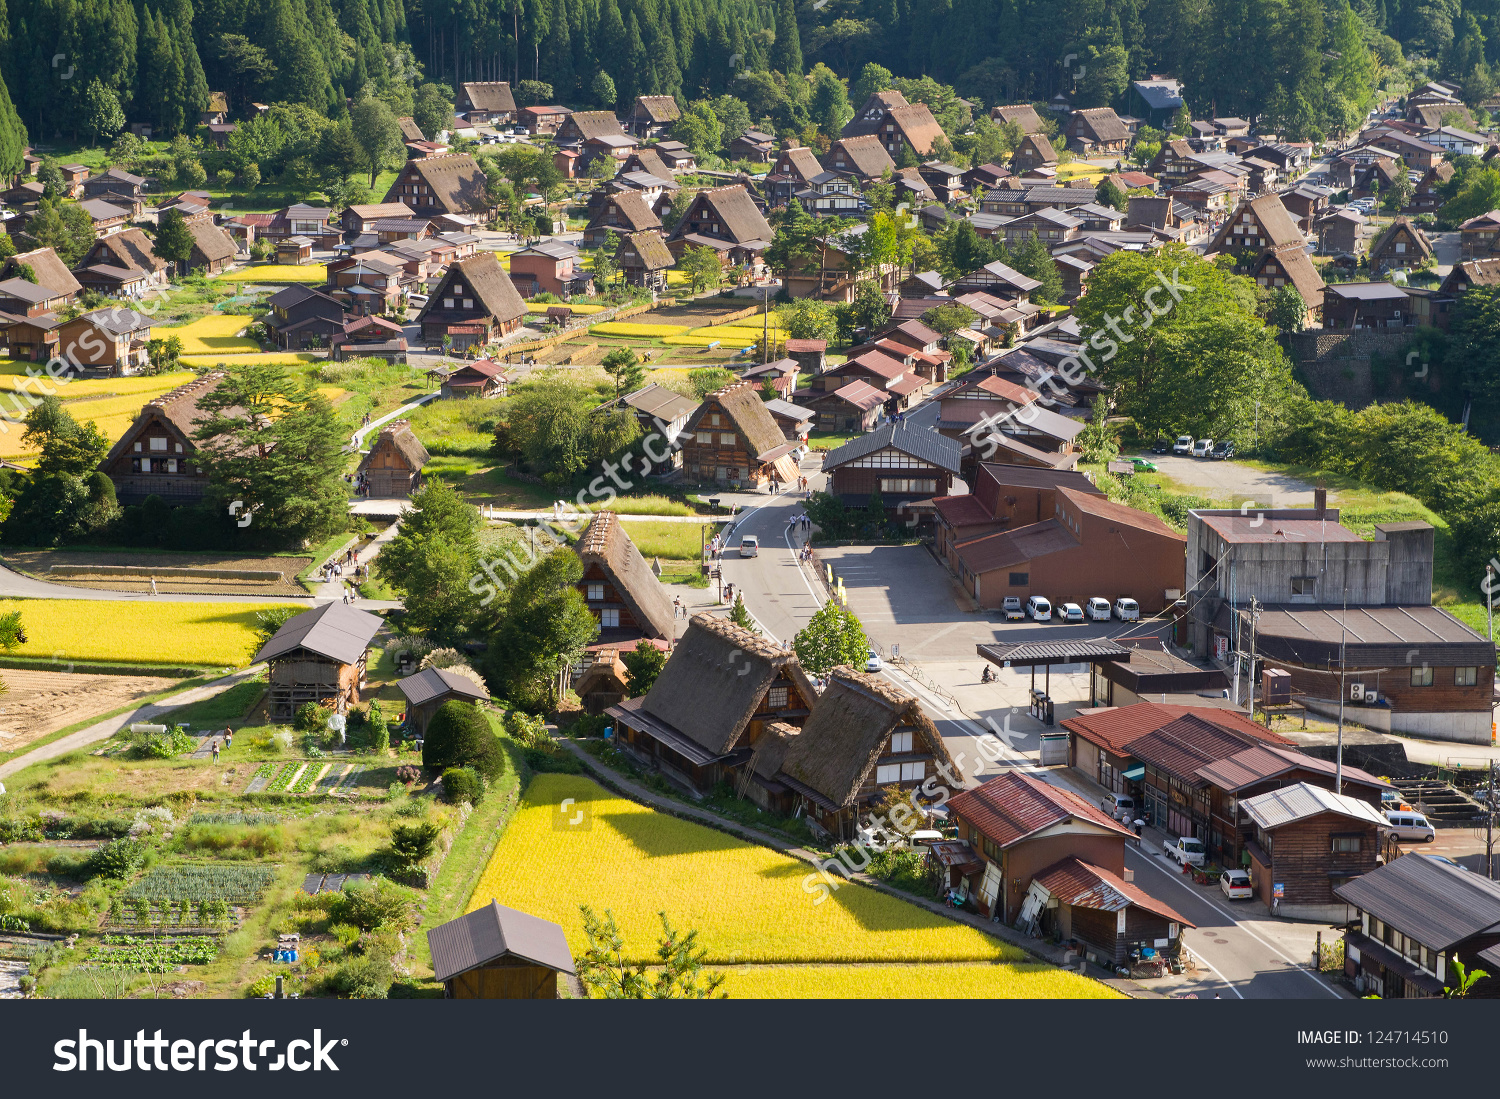 Nice Images Collection: Ogimachi Village Desktop Wallpapers